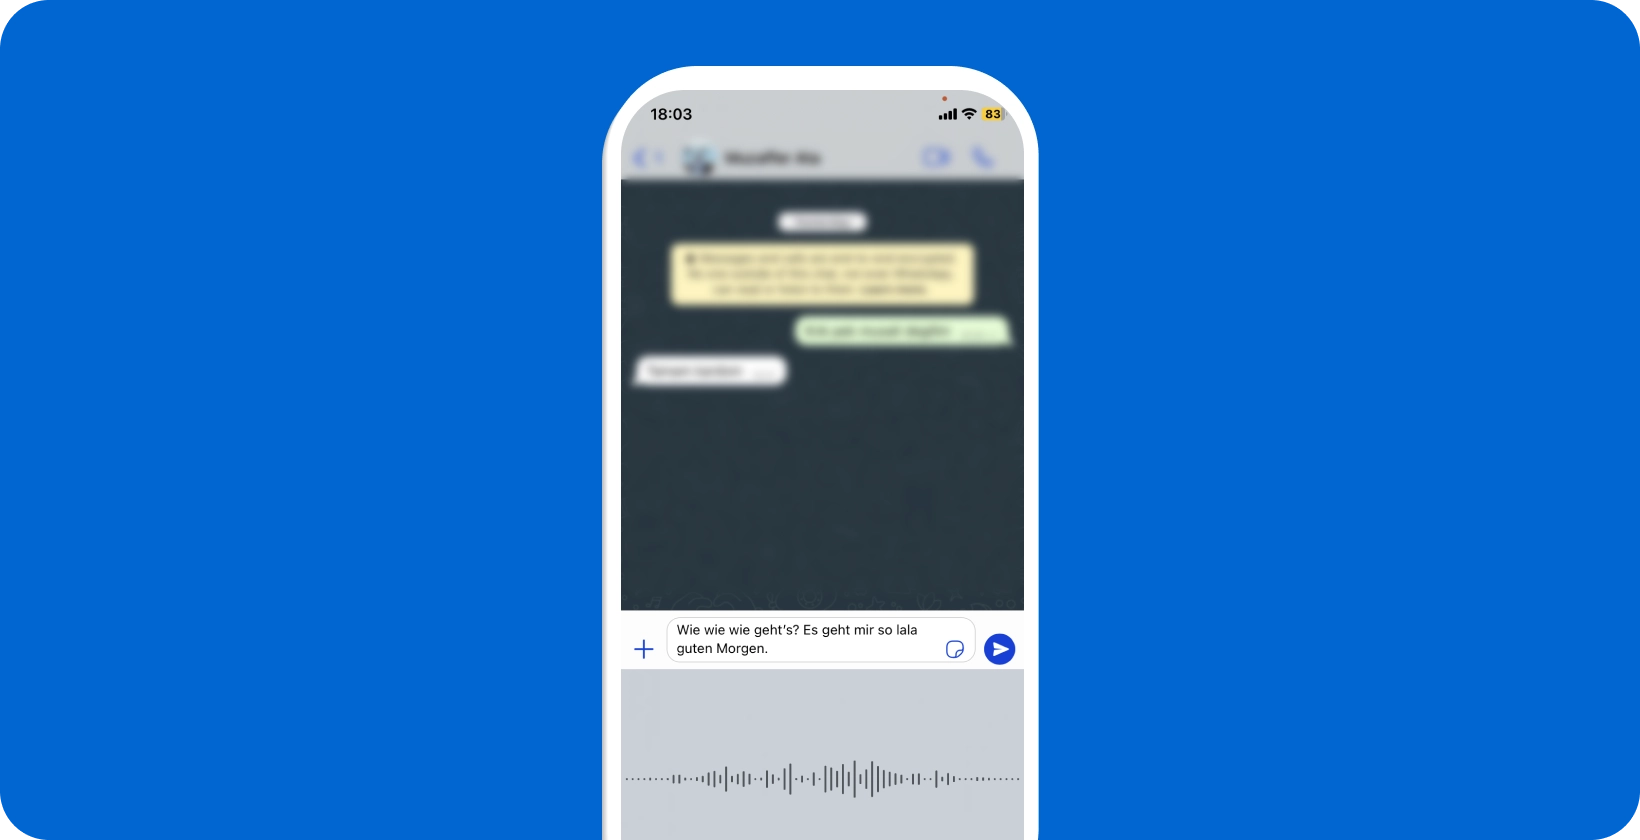 Devam eden WhatsApp sesli dikteyi gösteren akıllı telefon, gerçek zamanlı konuşmayı metne dönüştürme özelliğini sergiliyor.